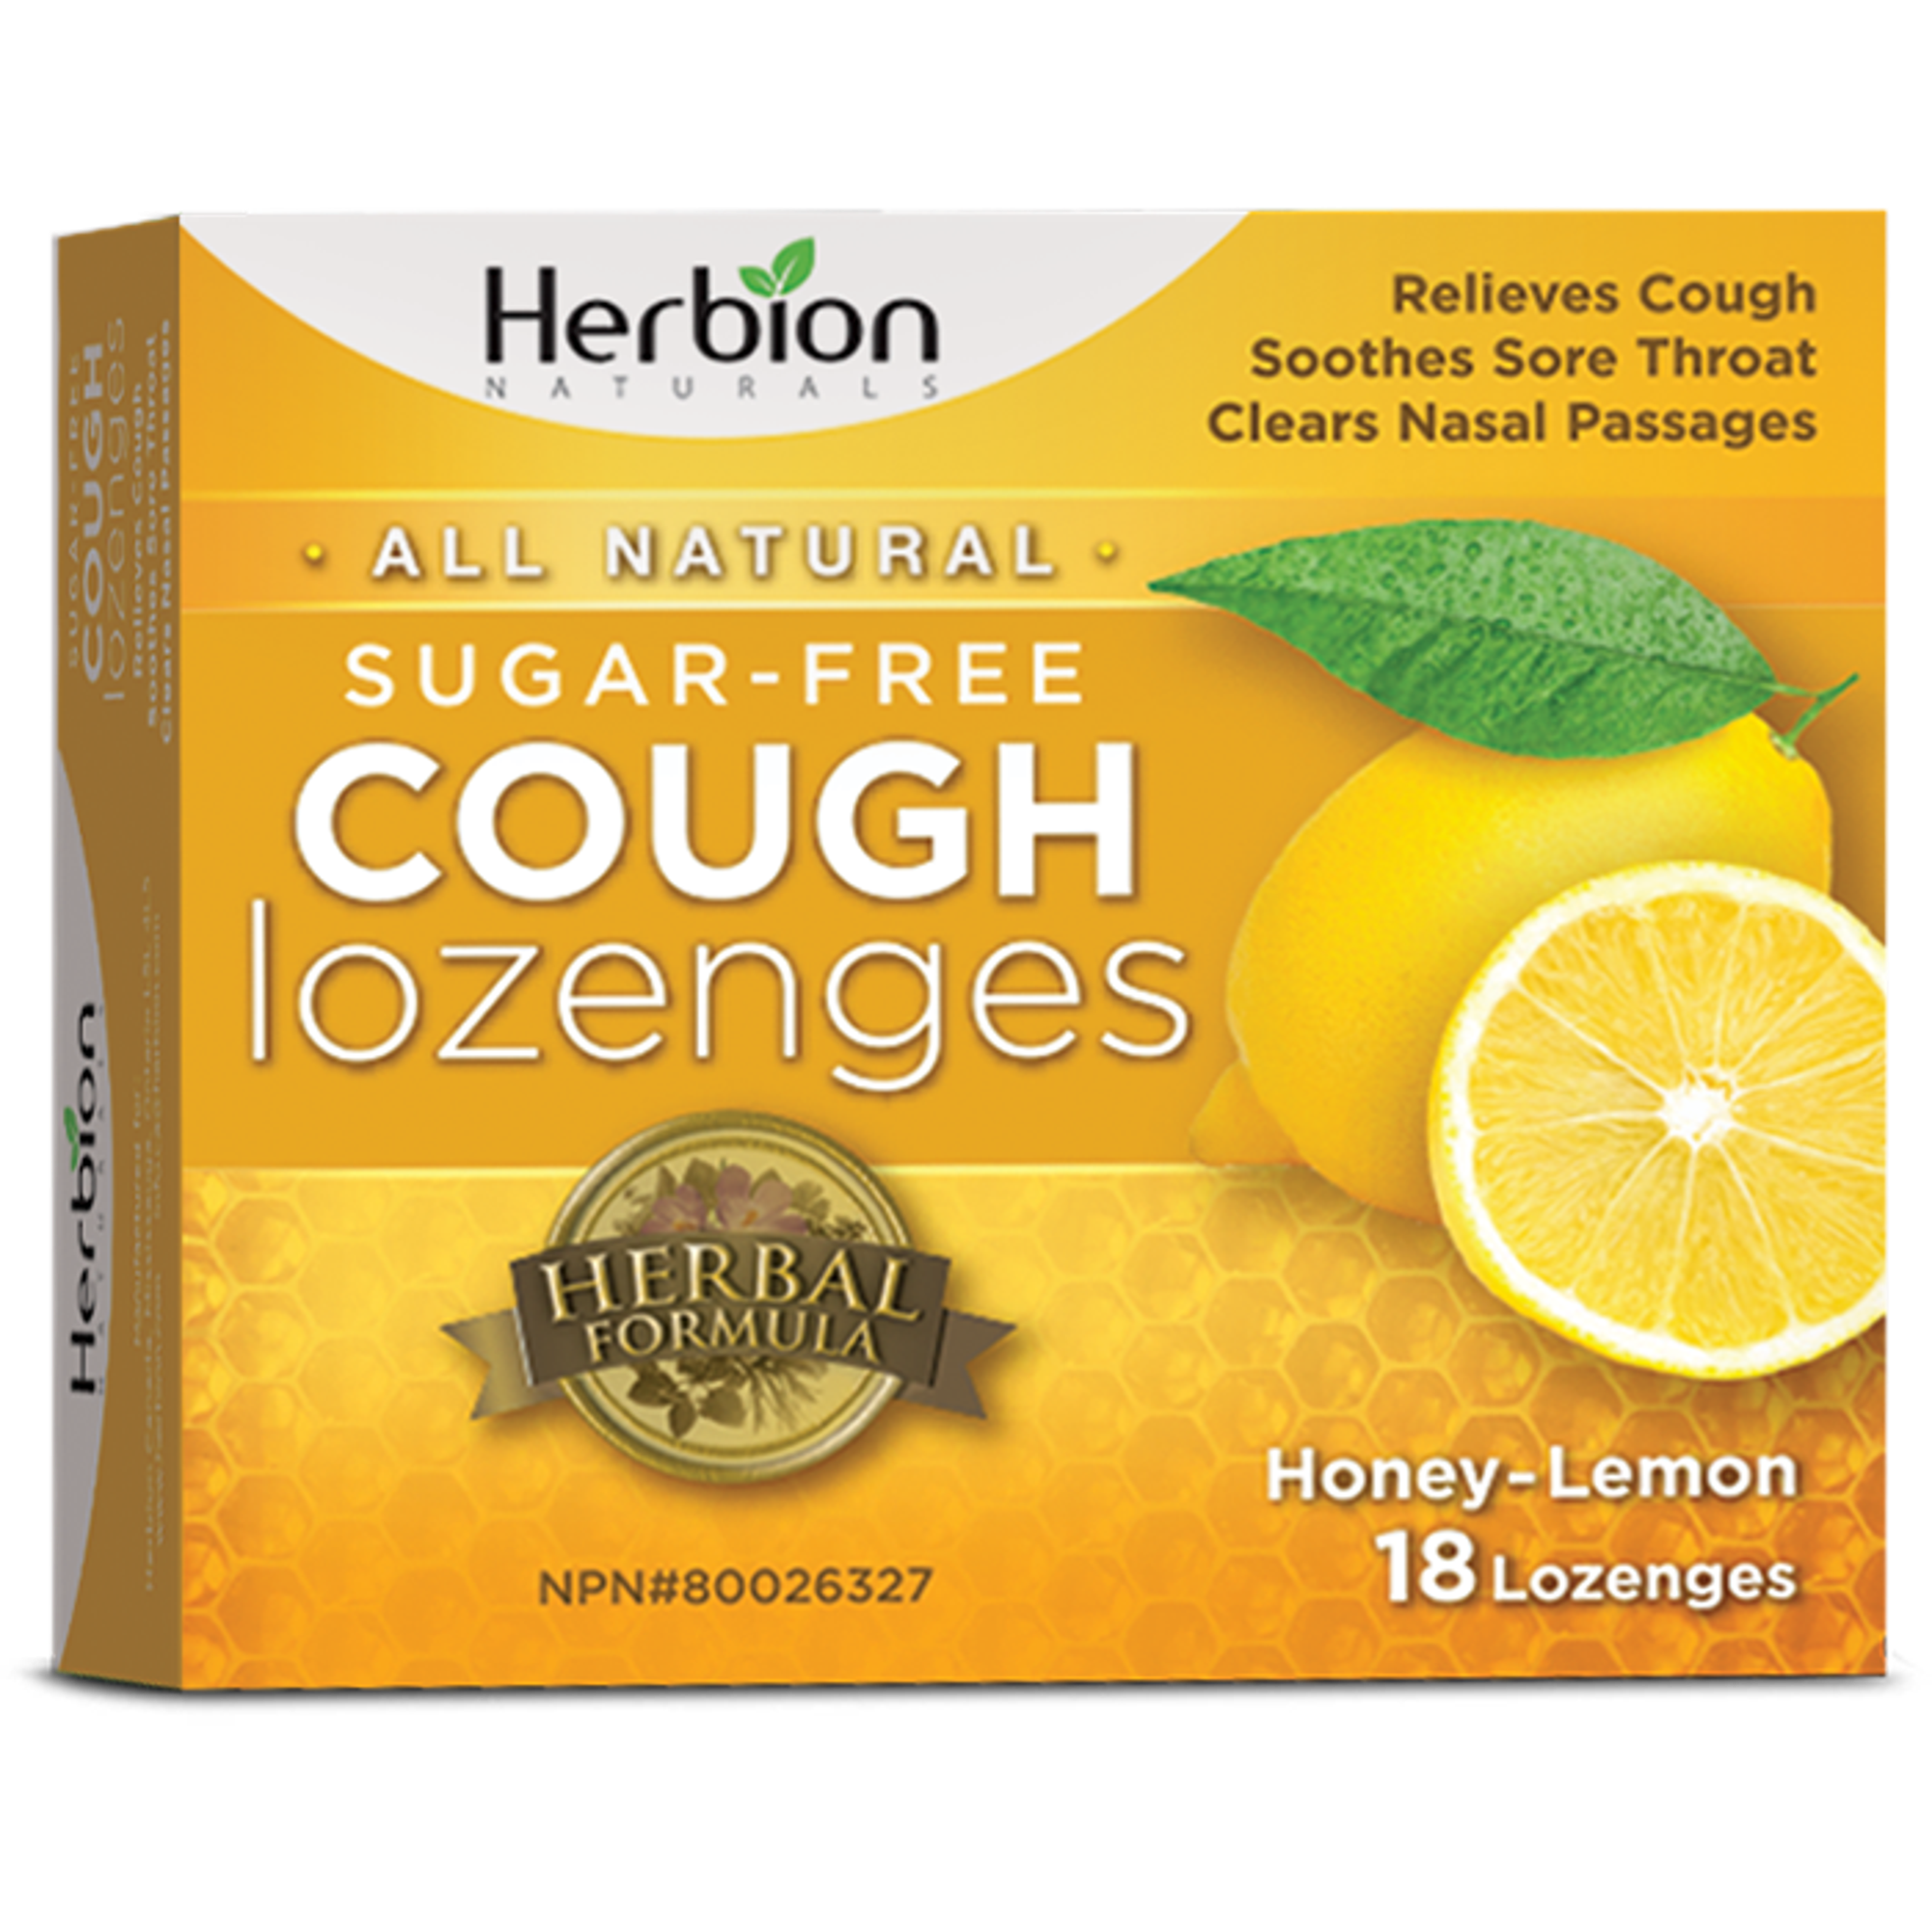 Herbion - Cough Lozenges - Sugar Free Honey Lemon - 18 Lozenges